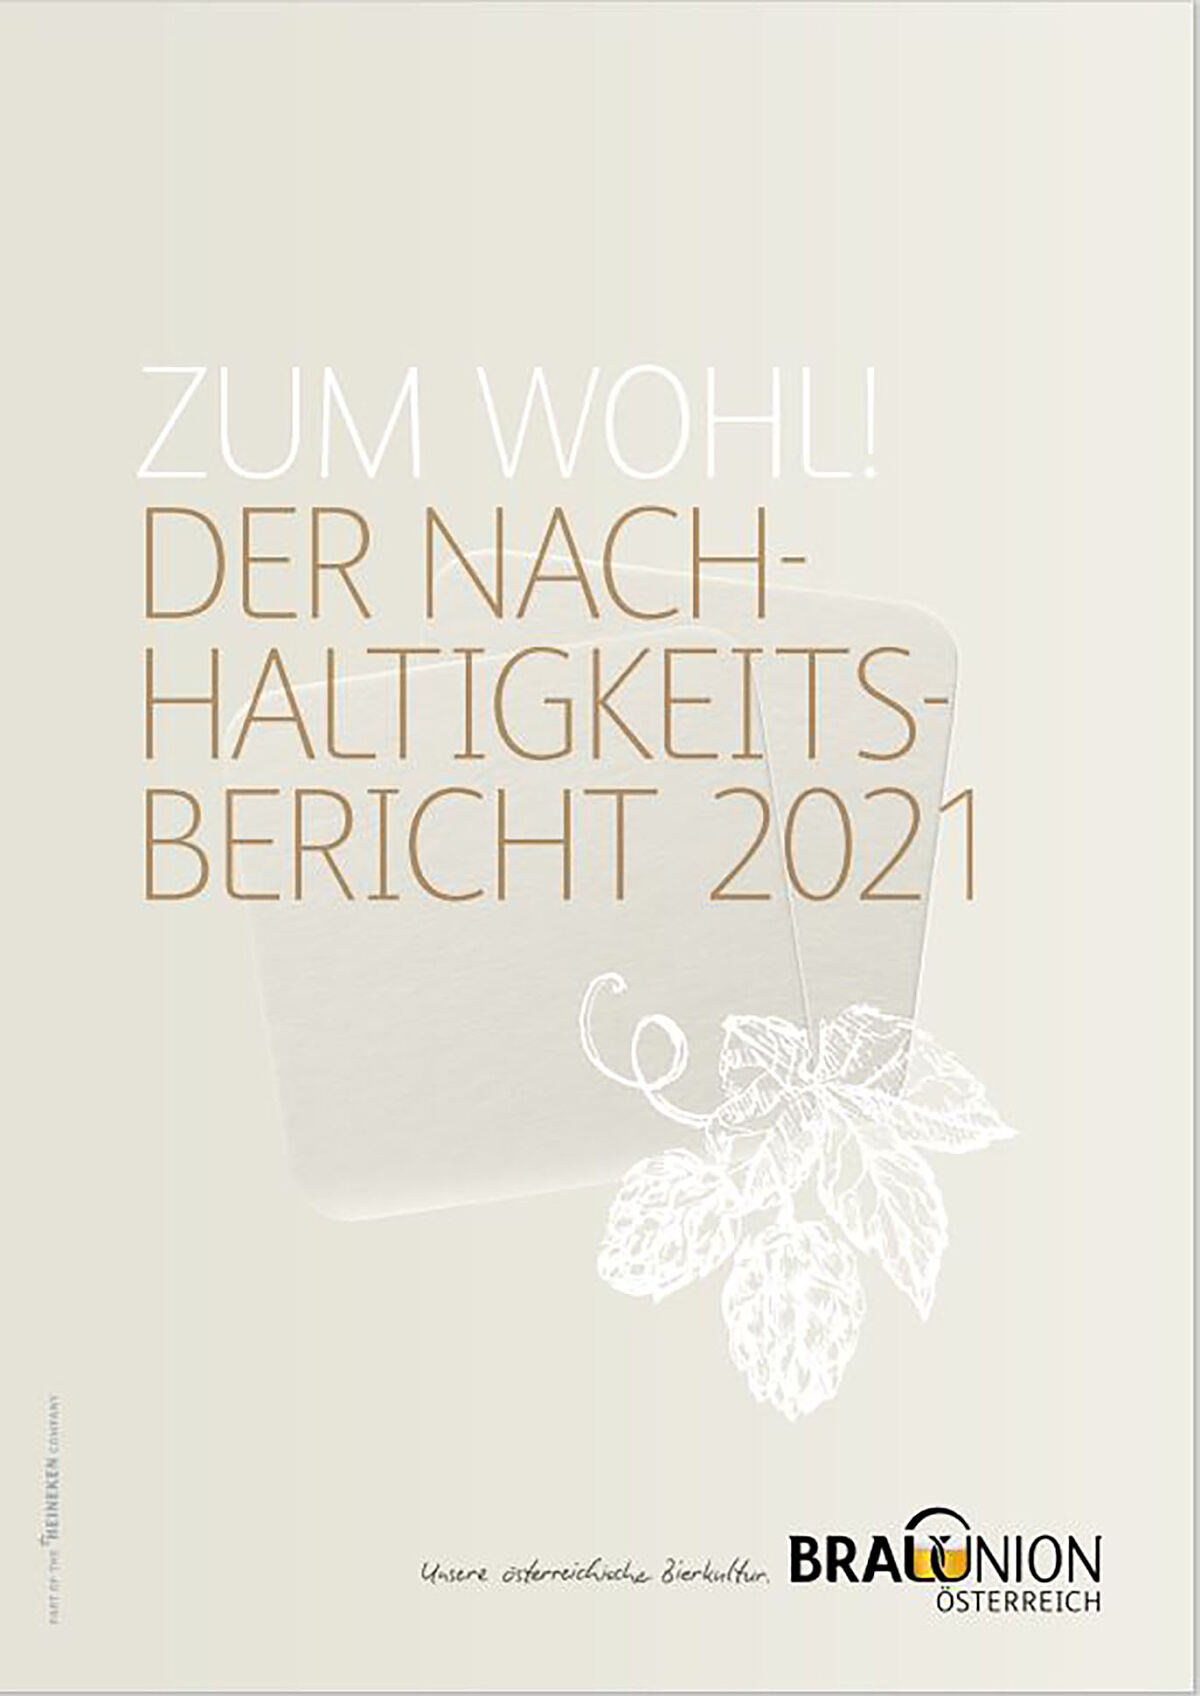 Der Nachhaltigkeitsbericht 2021 der Brau Union Österreich. 